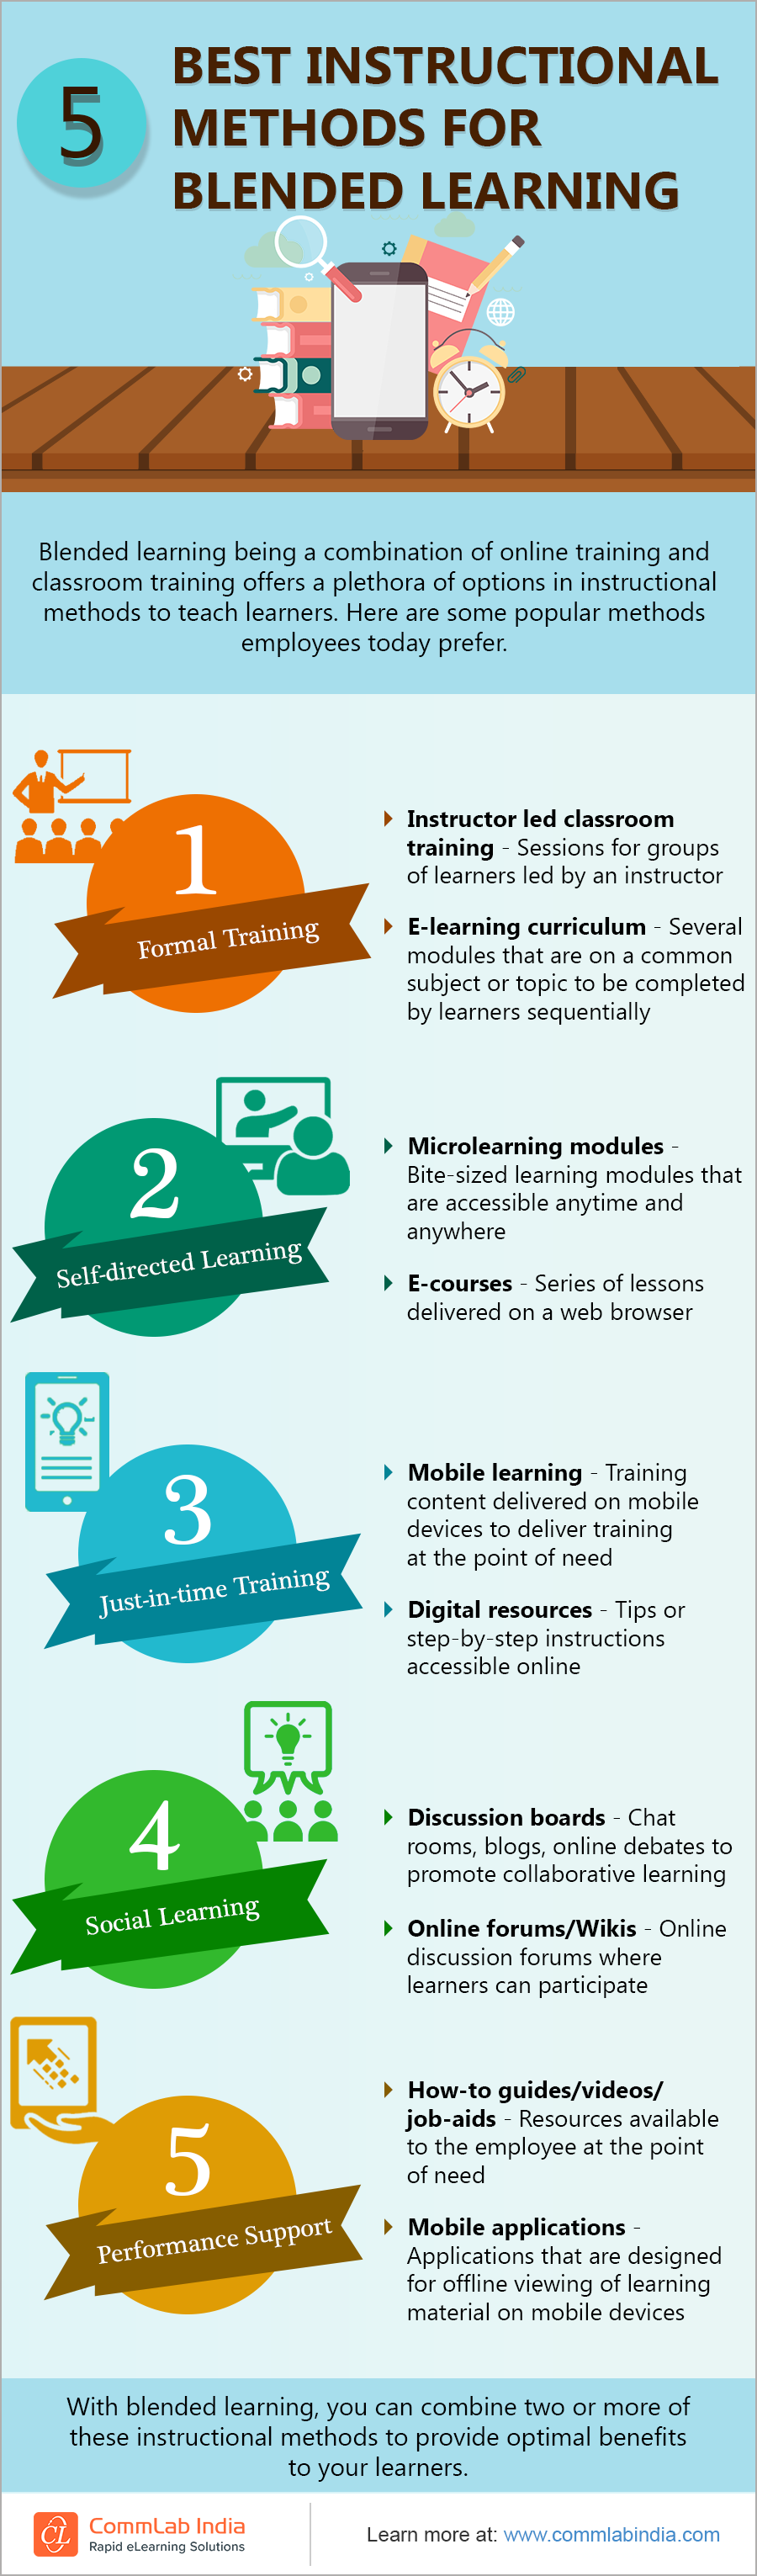 5 Best Instructional Methods for Blended Learning [Infographic]